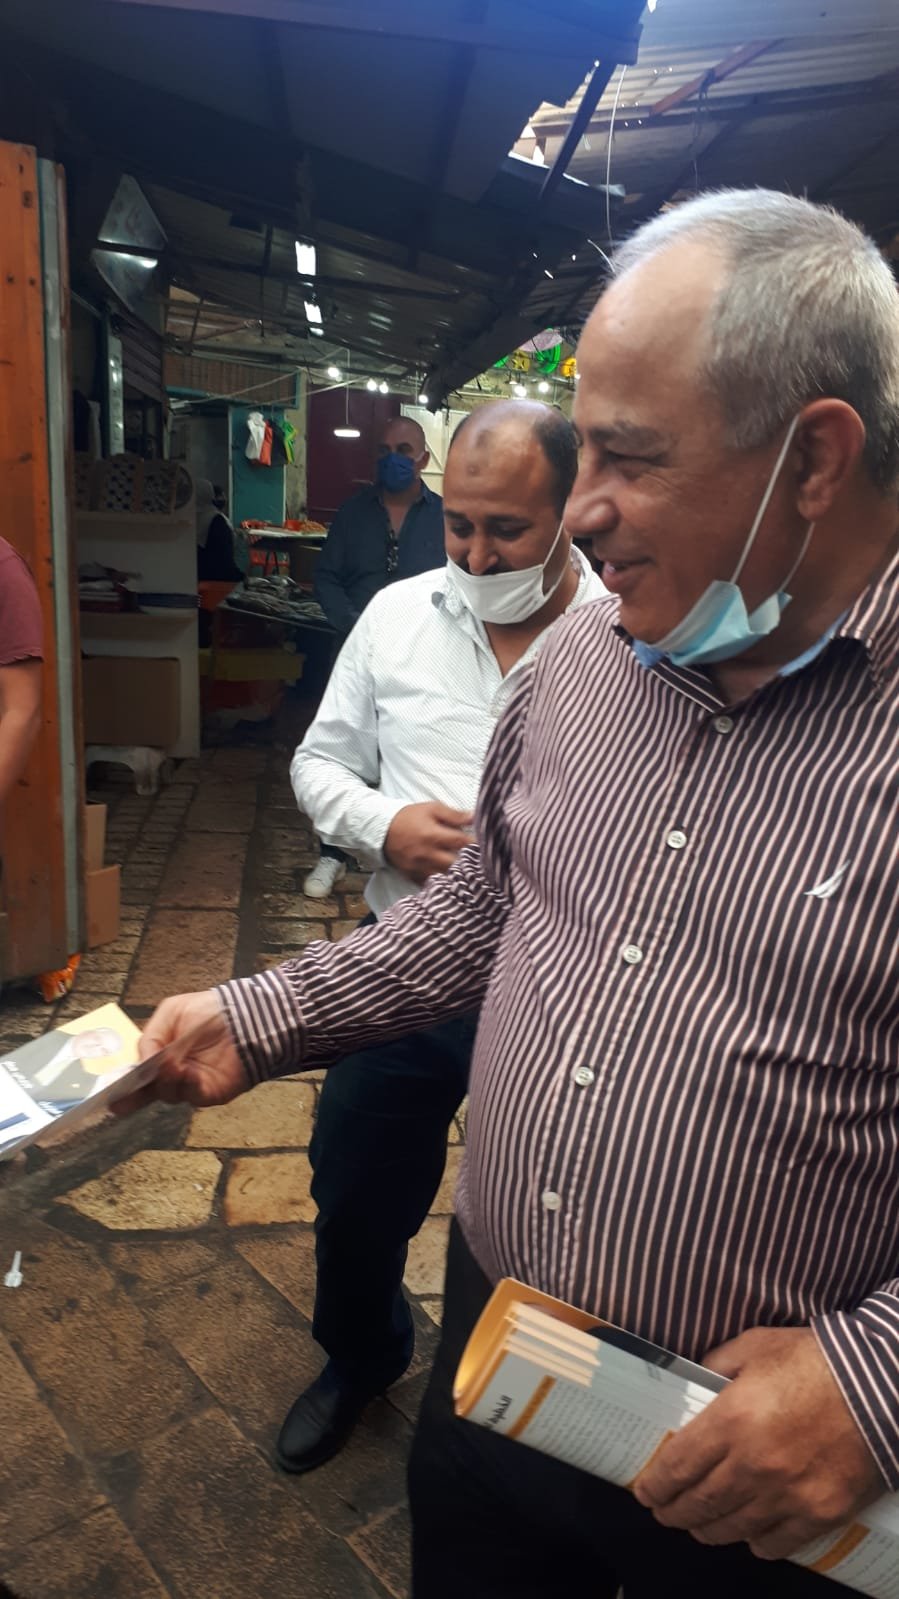 التفاف شعبي واضح حول حزب معا في الناصرة اكسال ويافة-6